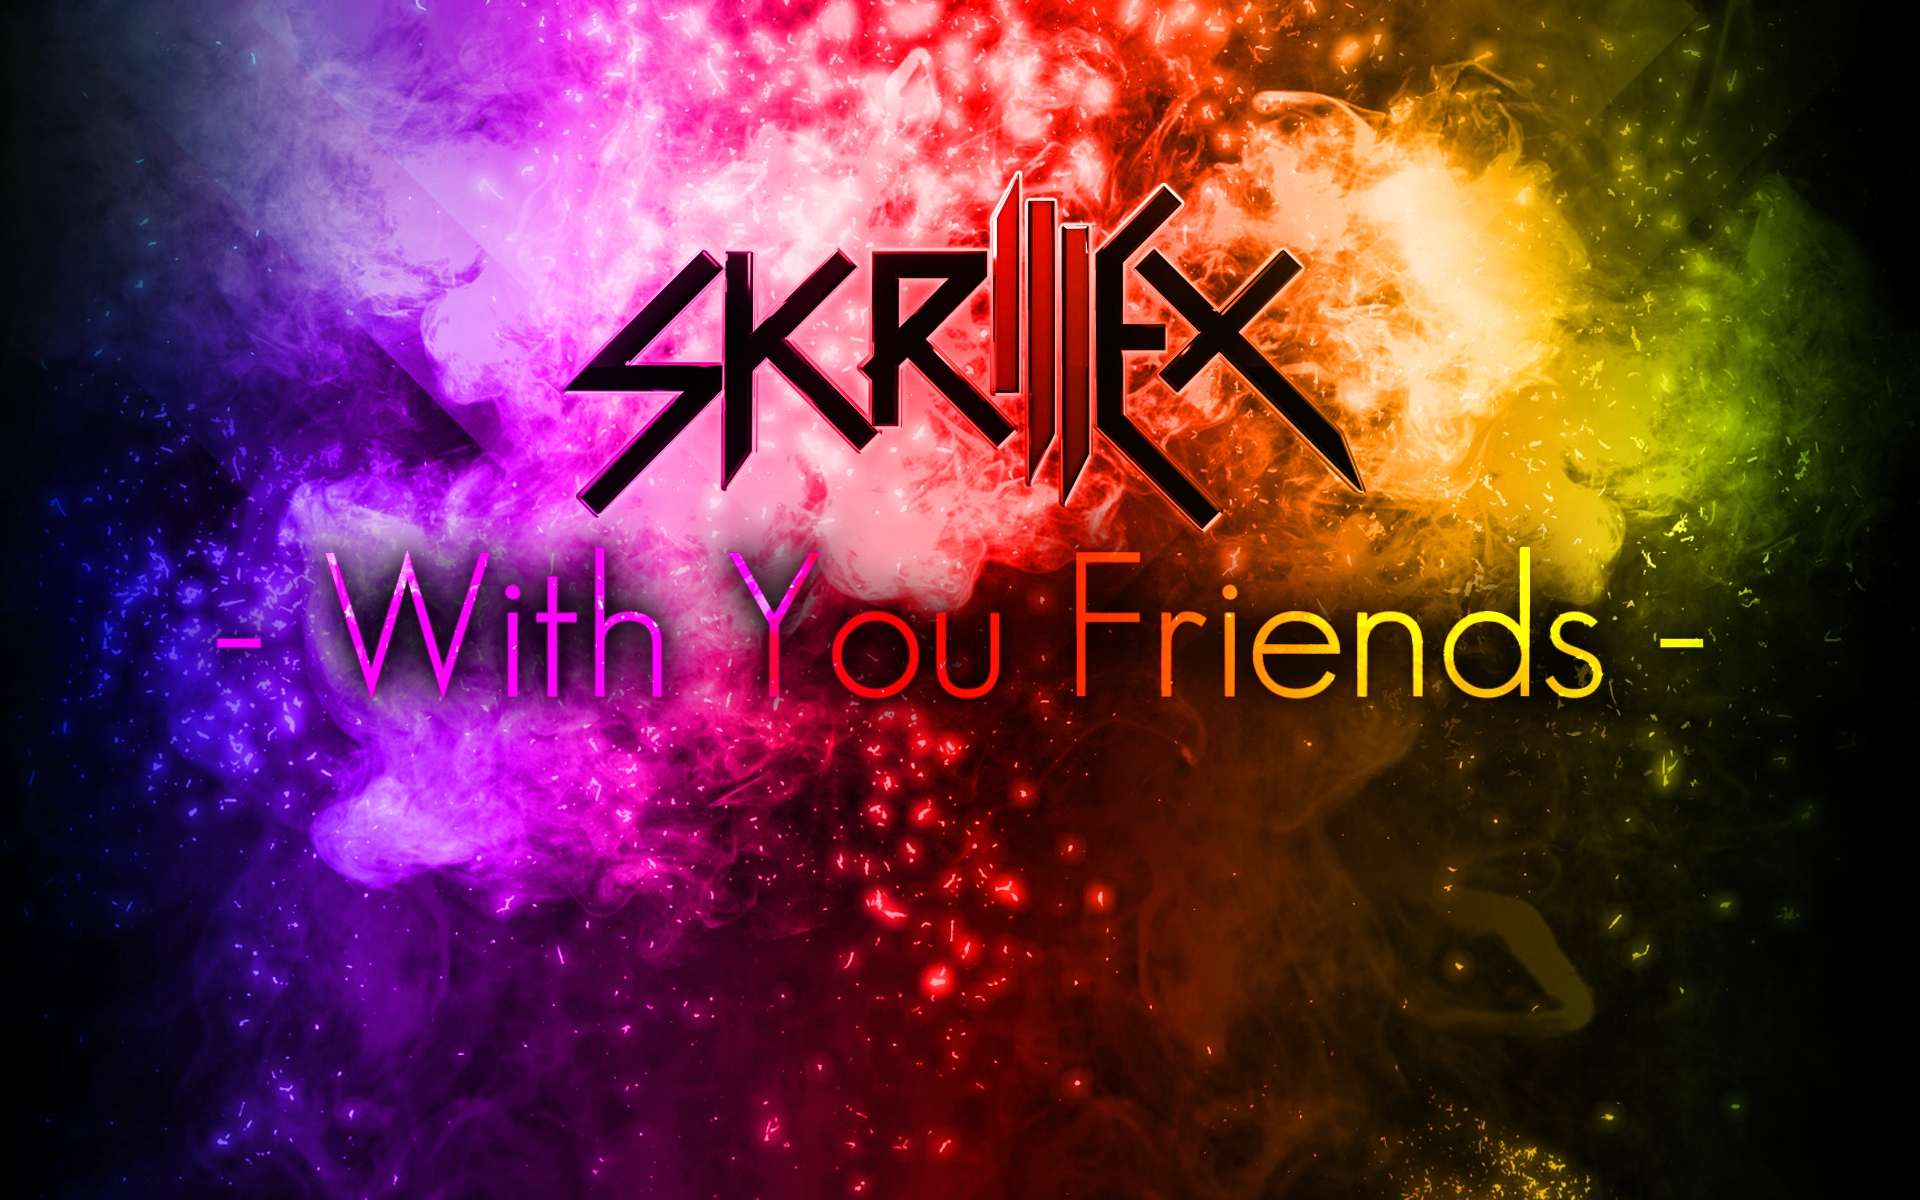 Картинки Skrillex, имя, взрыв, цвета, энергия фото и обои на рабочий стол